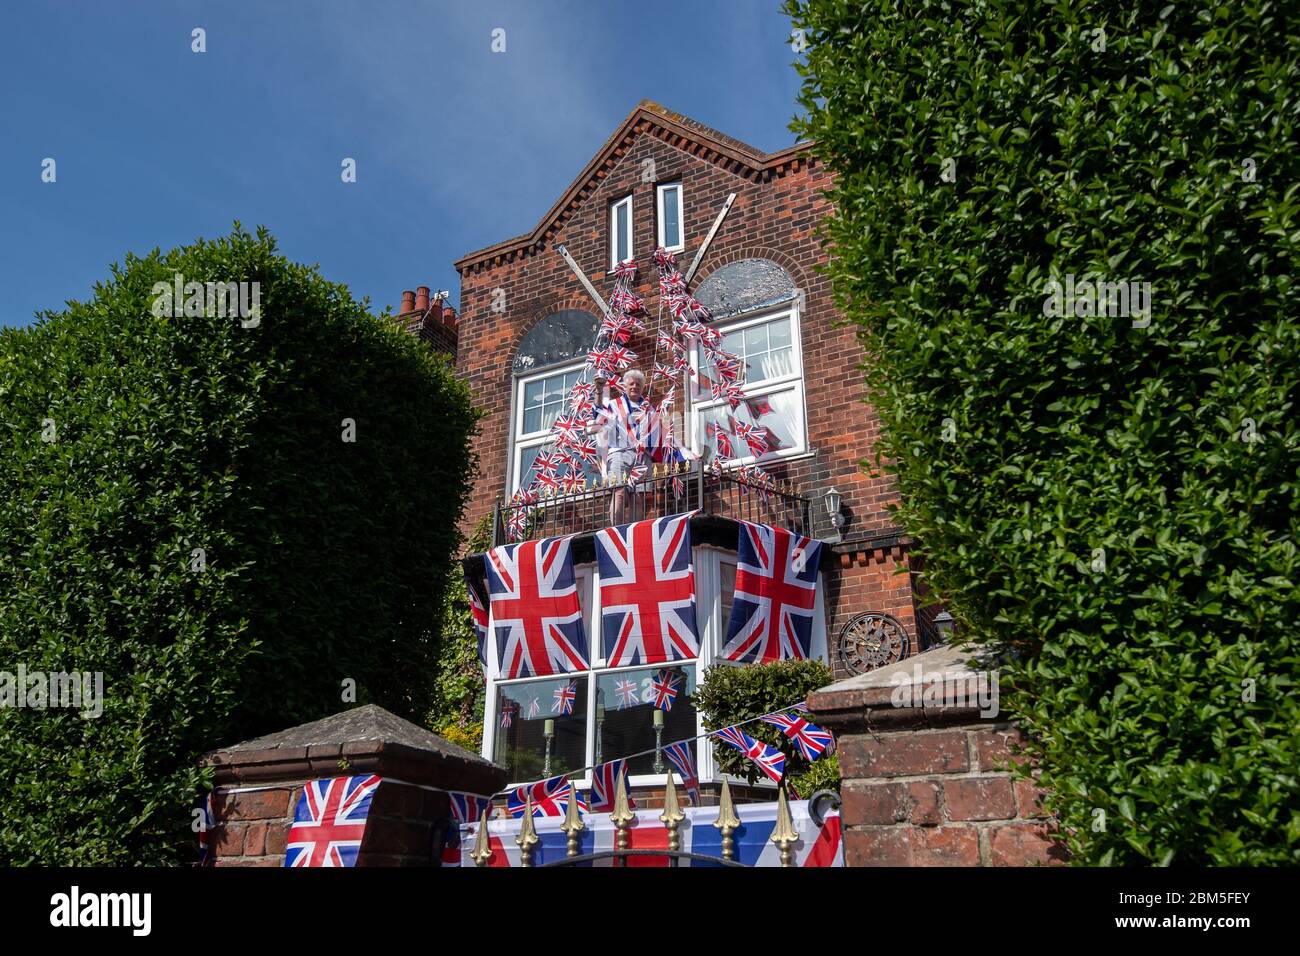 Pageantmaster des VE Day 75 Bruno Peek schmückt sein Haus in Gorleston-on-Sea, Norfolk, mit Fahnen und Aschen zum 75. Jahrestag des Endes des Zweiten Weltkriegs in Europa. Stockfoto